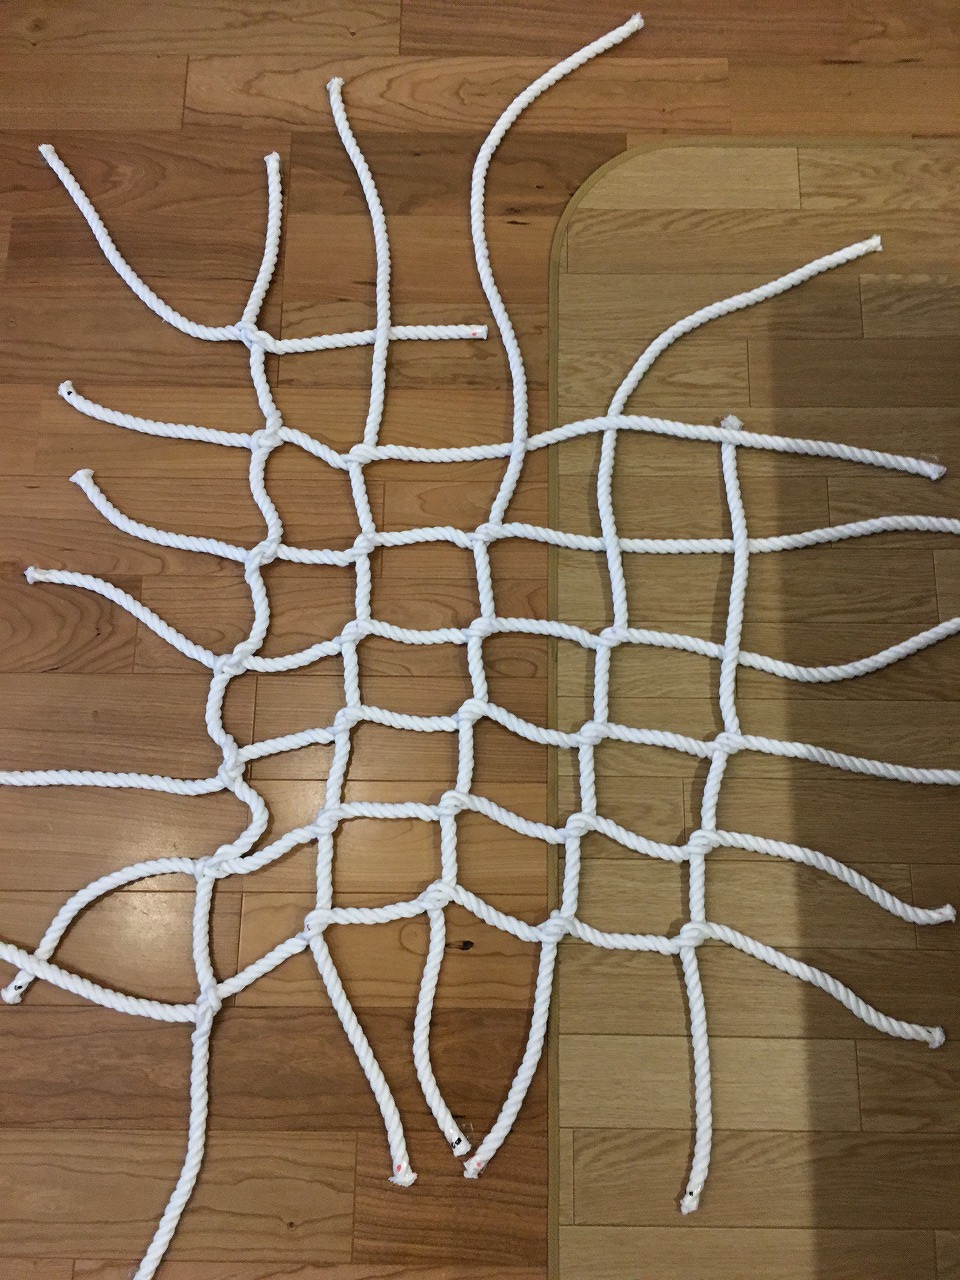 もっと考える遊びへ 自作のうんていにロープネットを追加してみた なるべく自分で作りたい